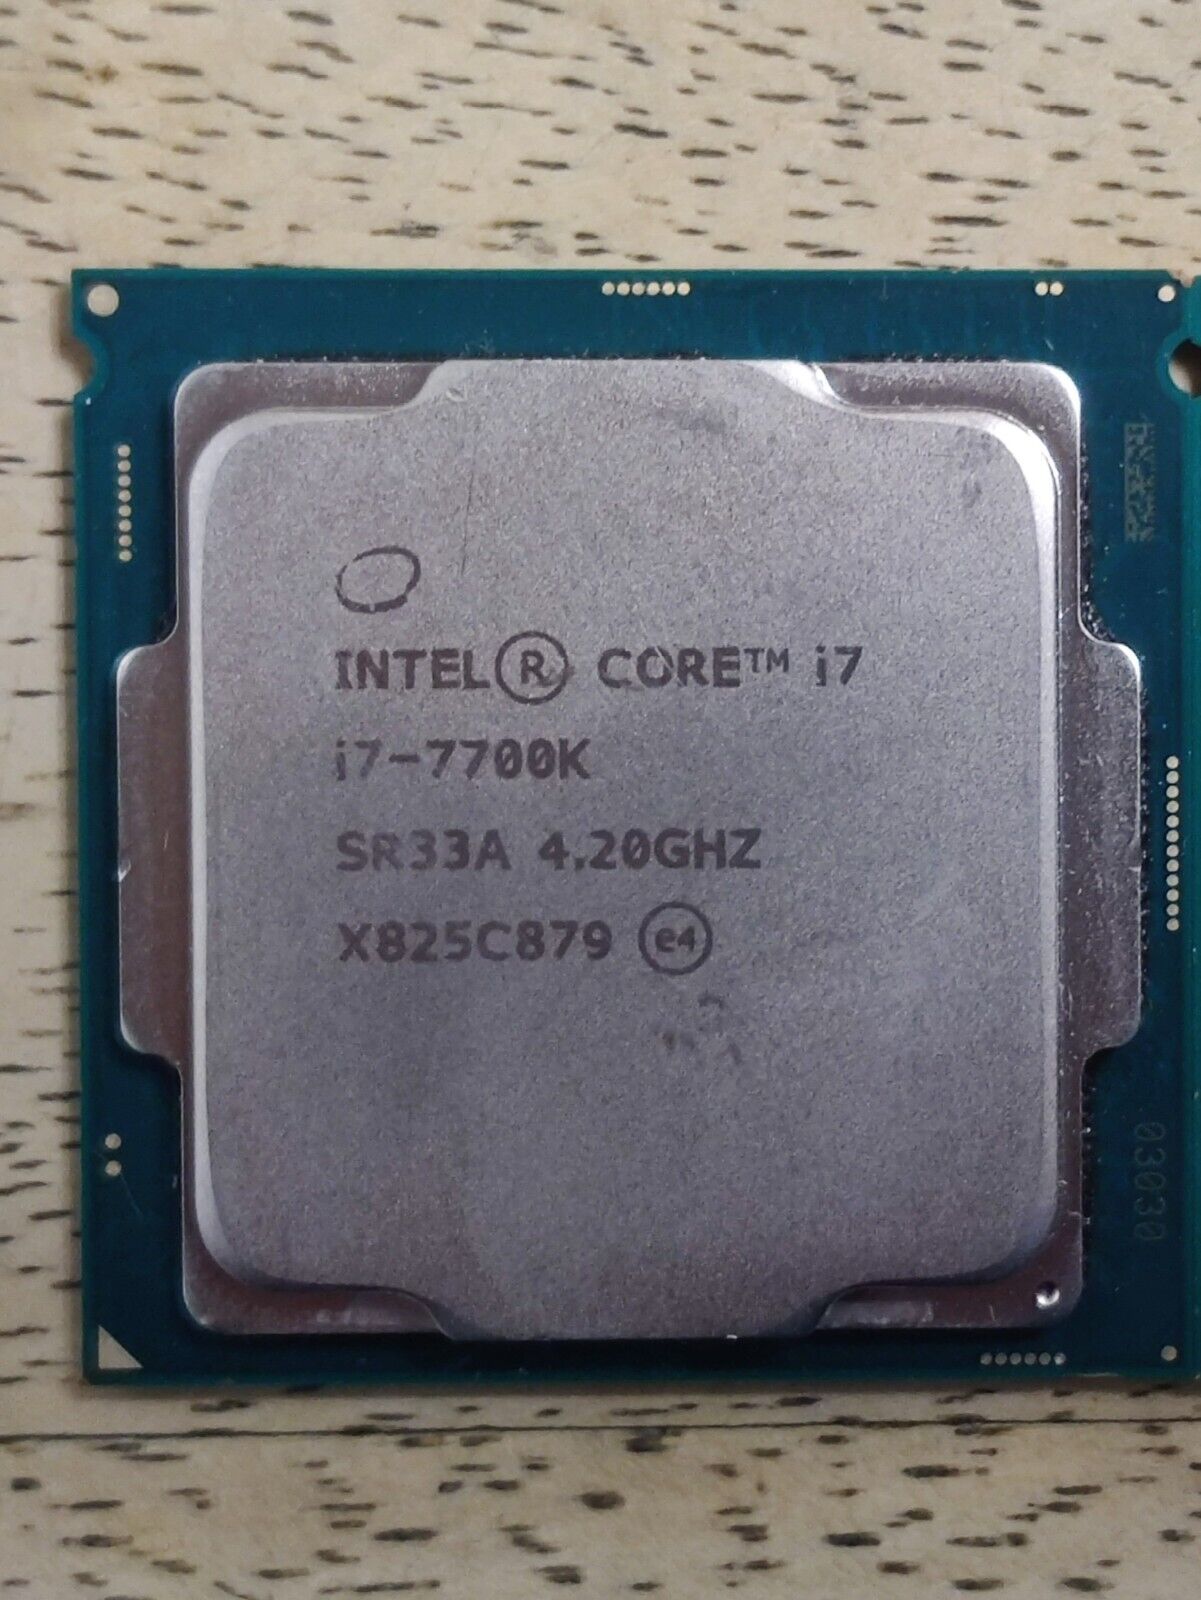 Intel Core I7-7700K Processor (4.2 GHz, Quad-Core, LGA 1151) - SR33A